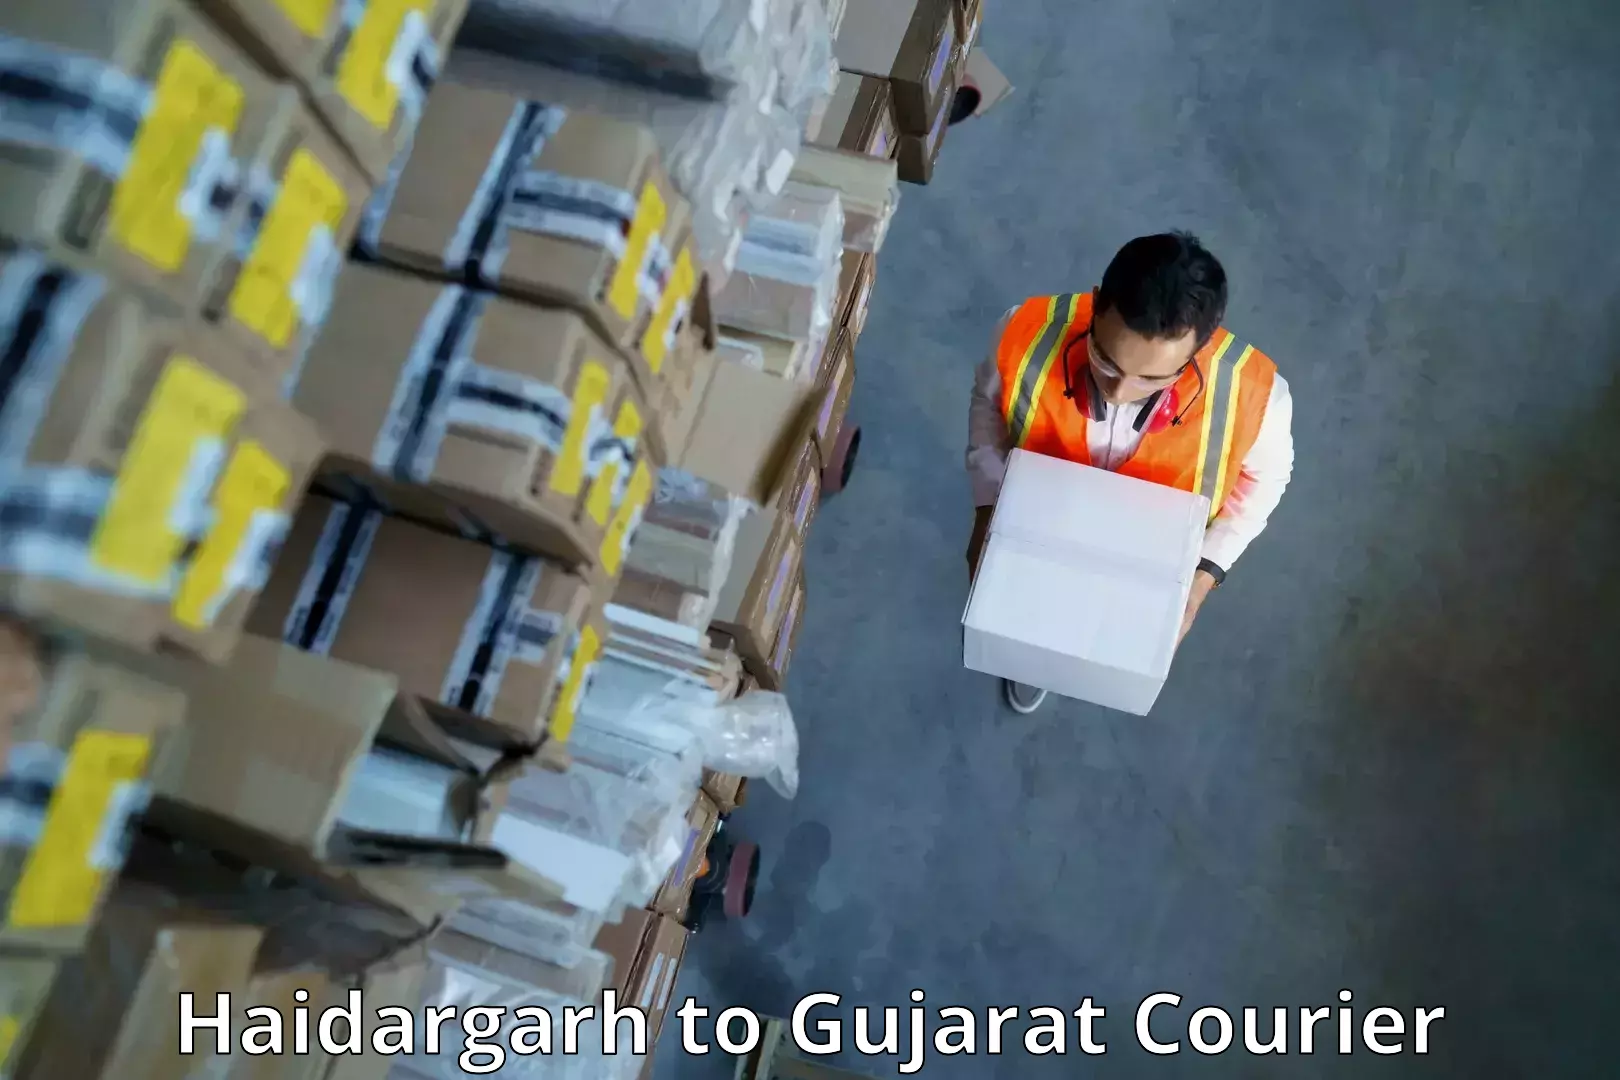 Advanced shipping network Haidargarh to Junagadh